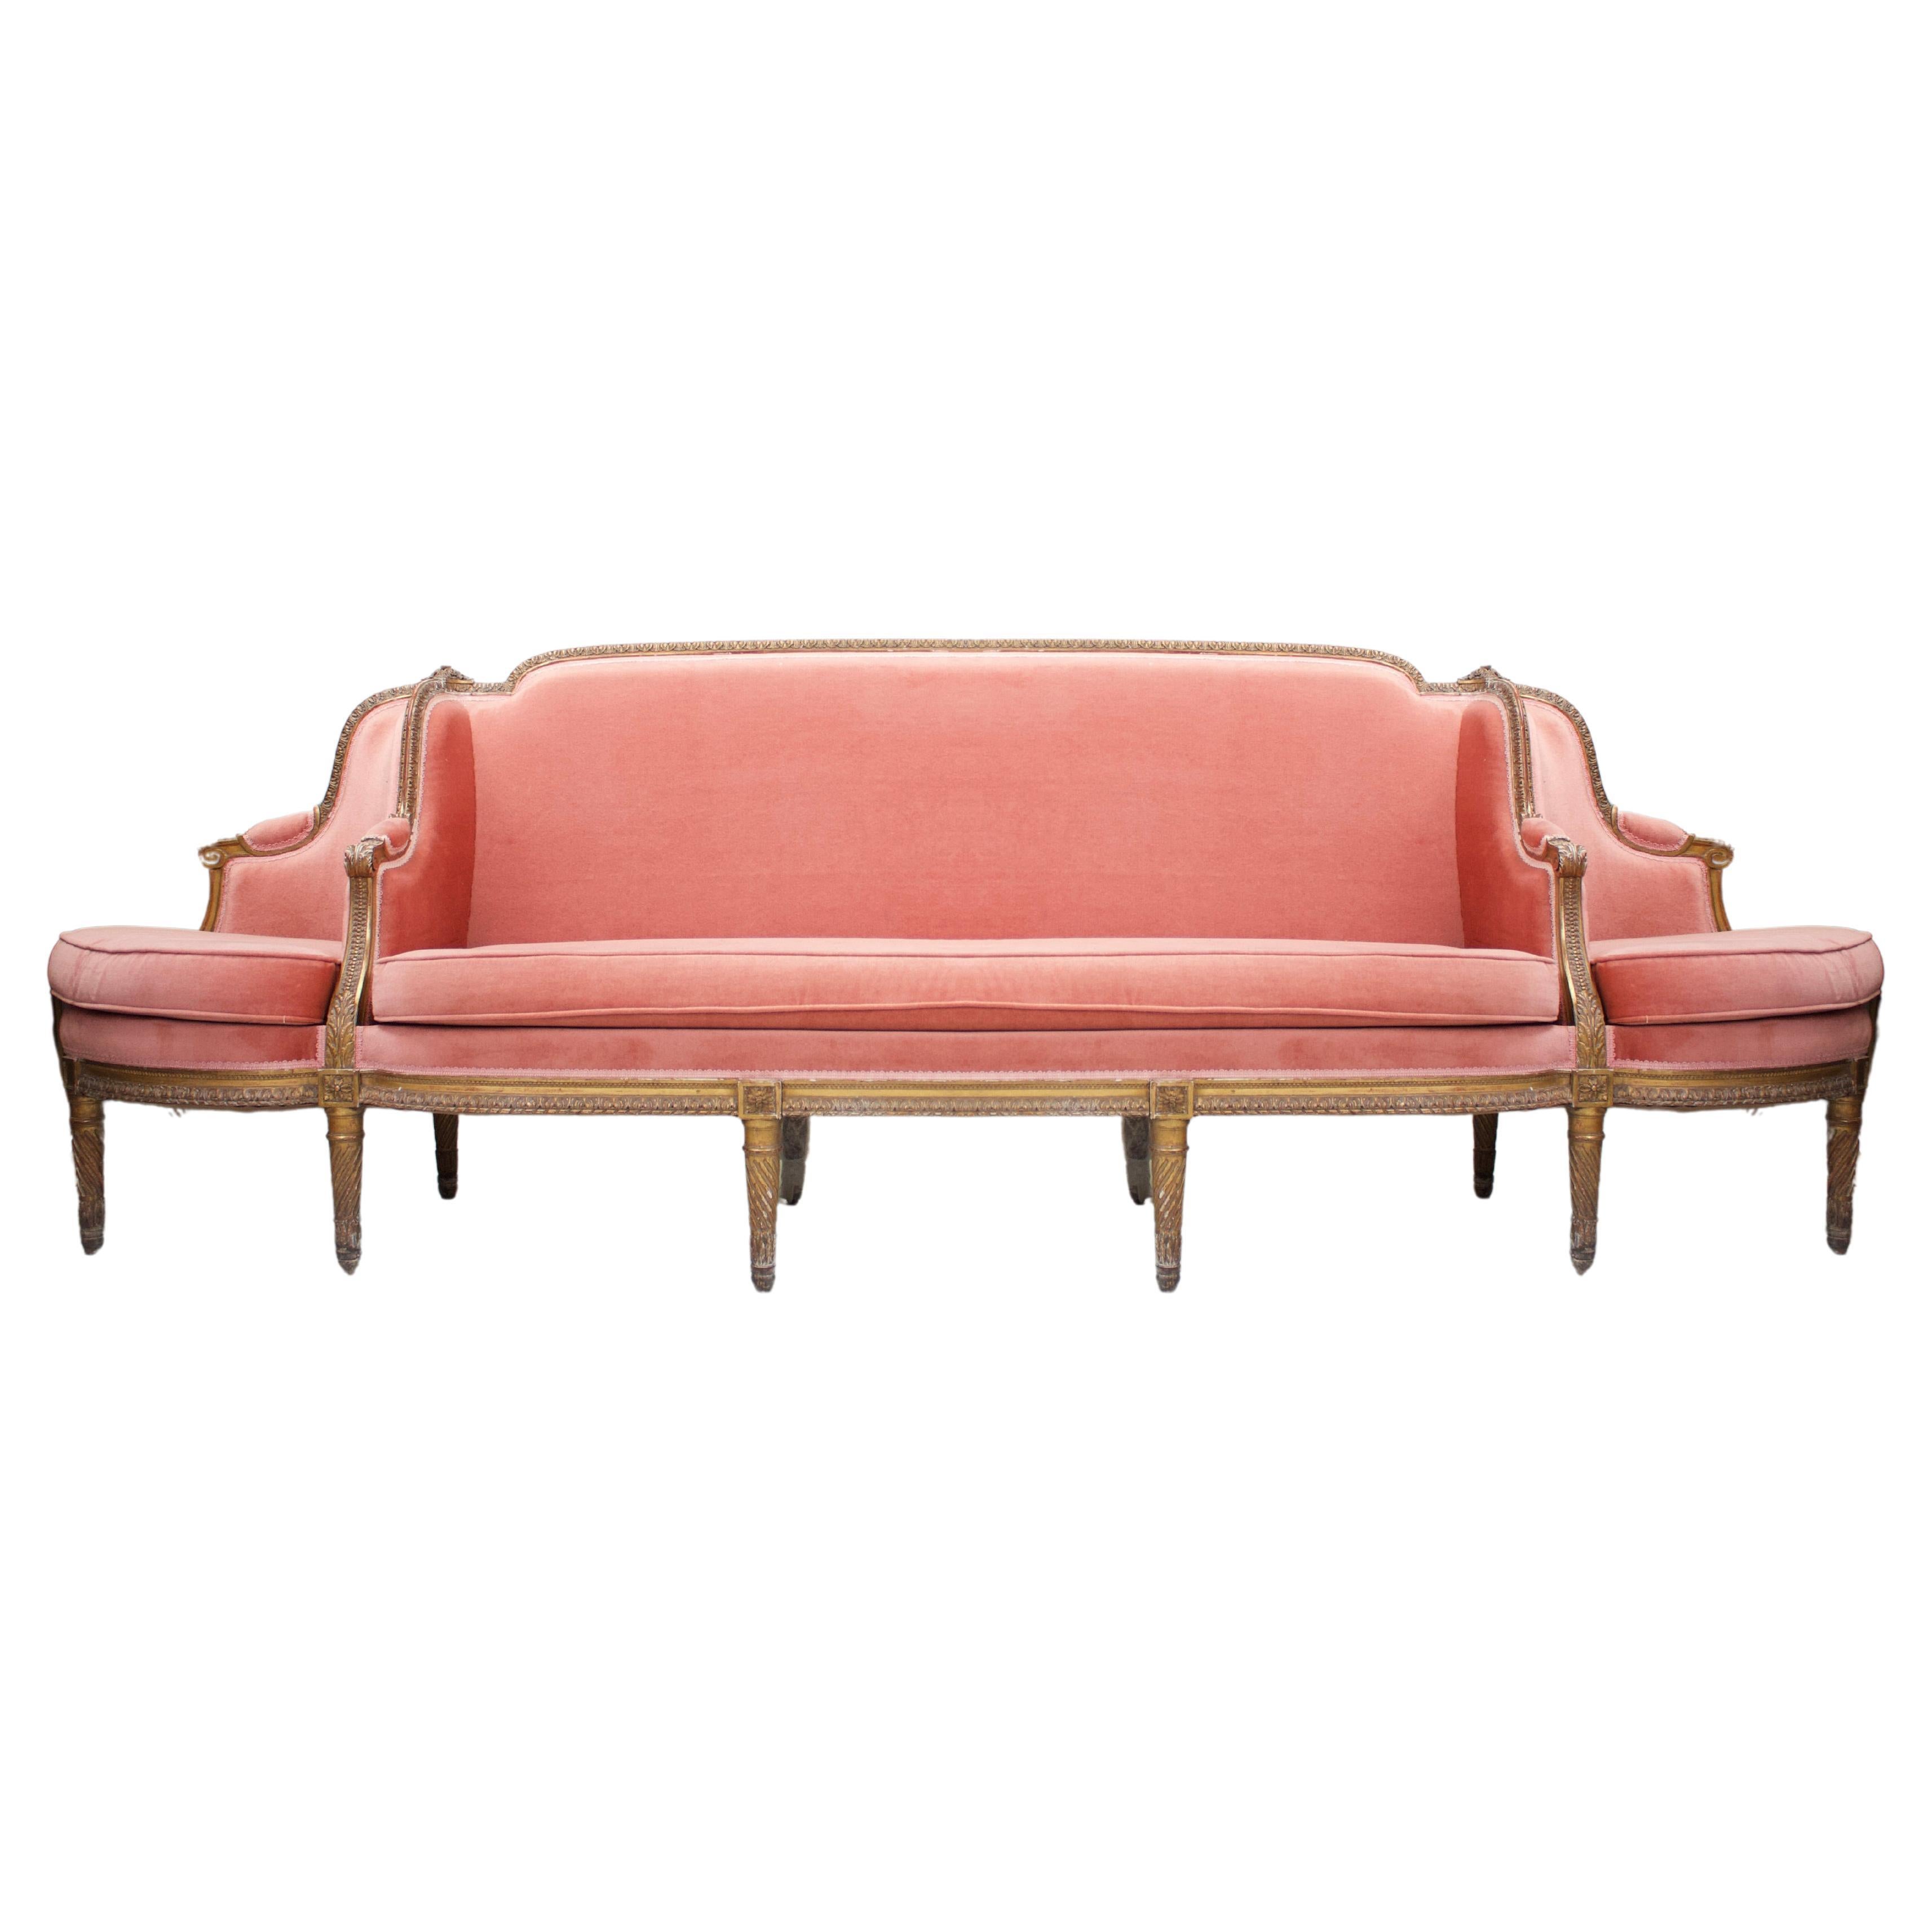 Grand canapé de conversation - Canapé à confident - Sofa